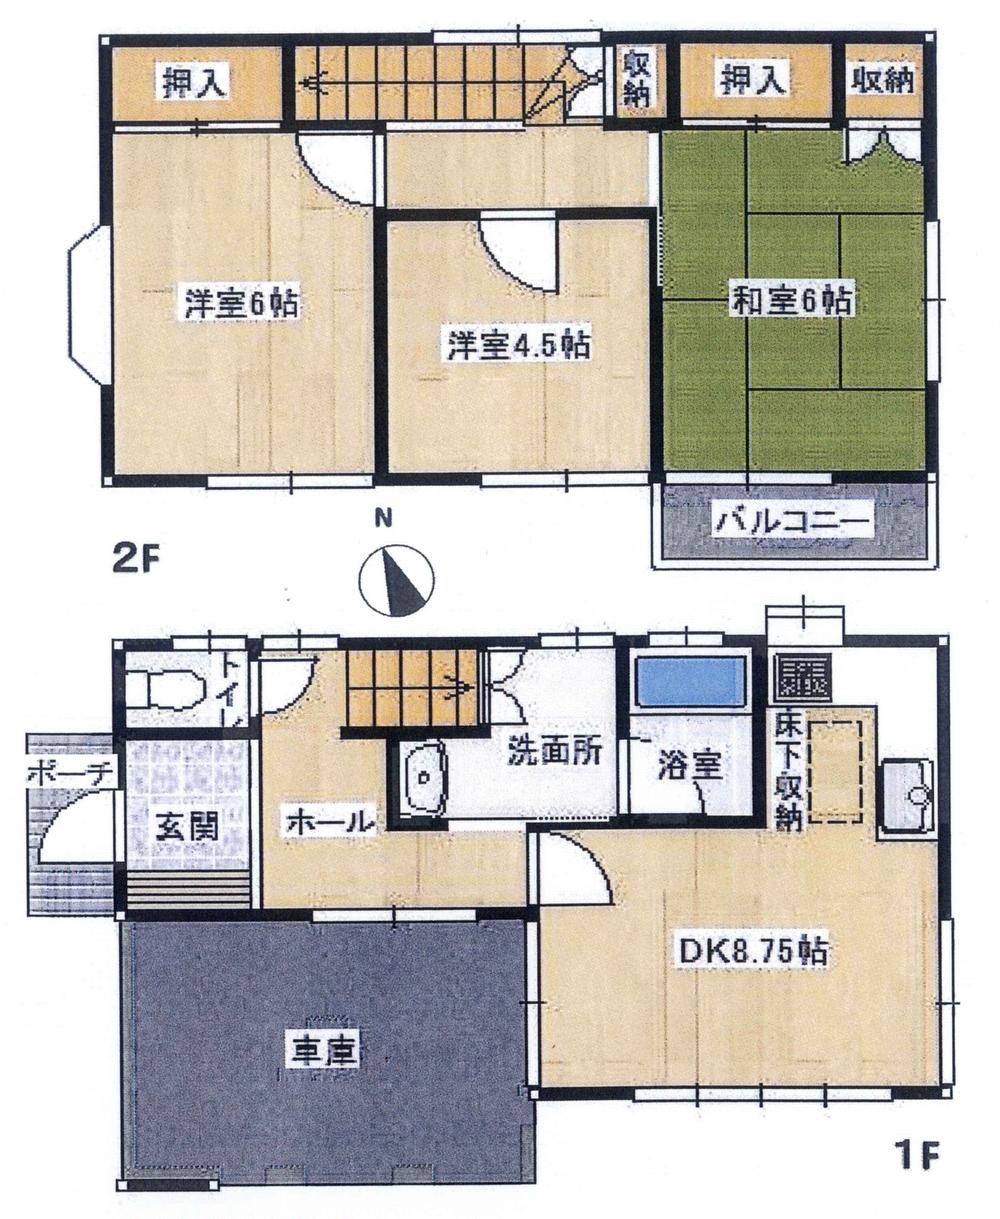 Floor plan. 8.5 million yen, 3DK, Land area 64 sq m , Building area 67.07 sq m